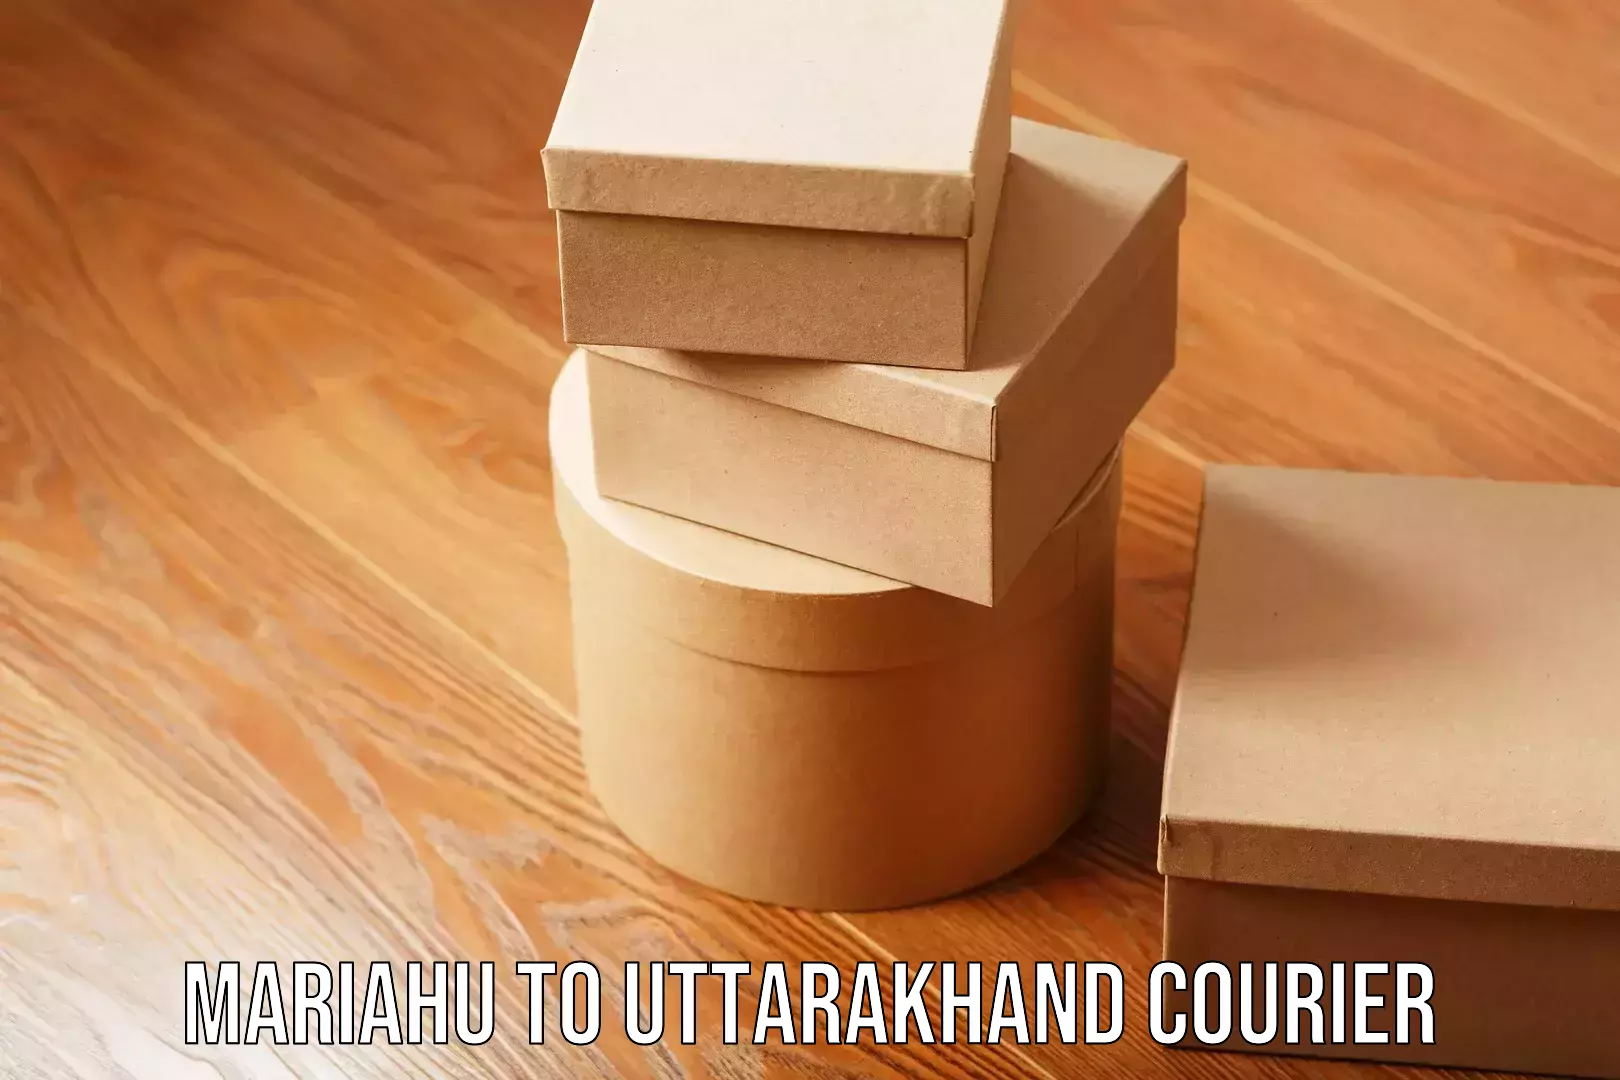 Safe moving services Mariahu to Uttarakhand